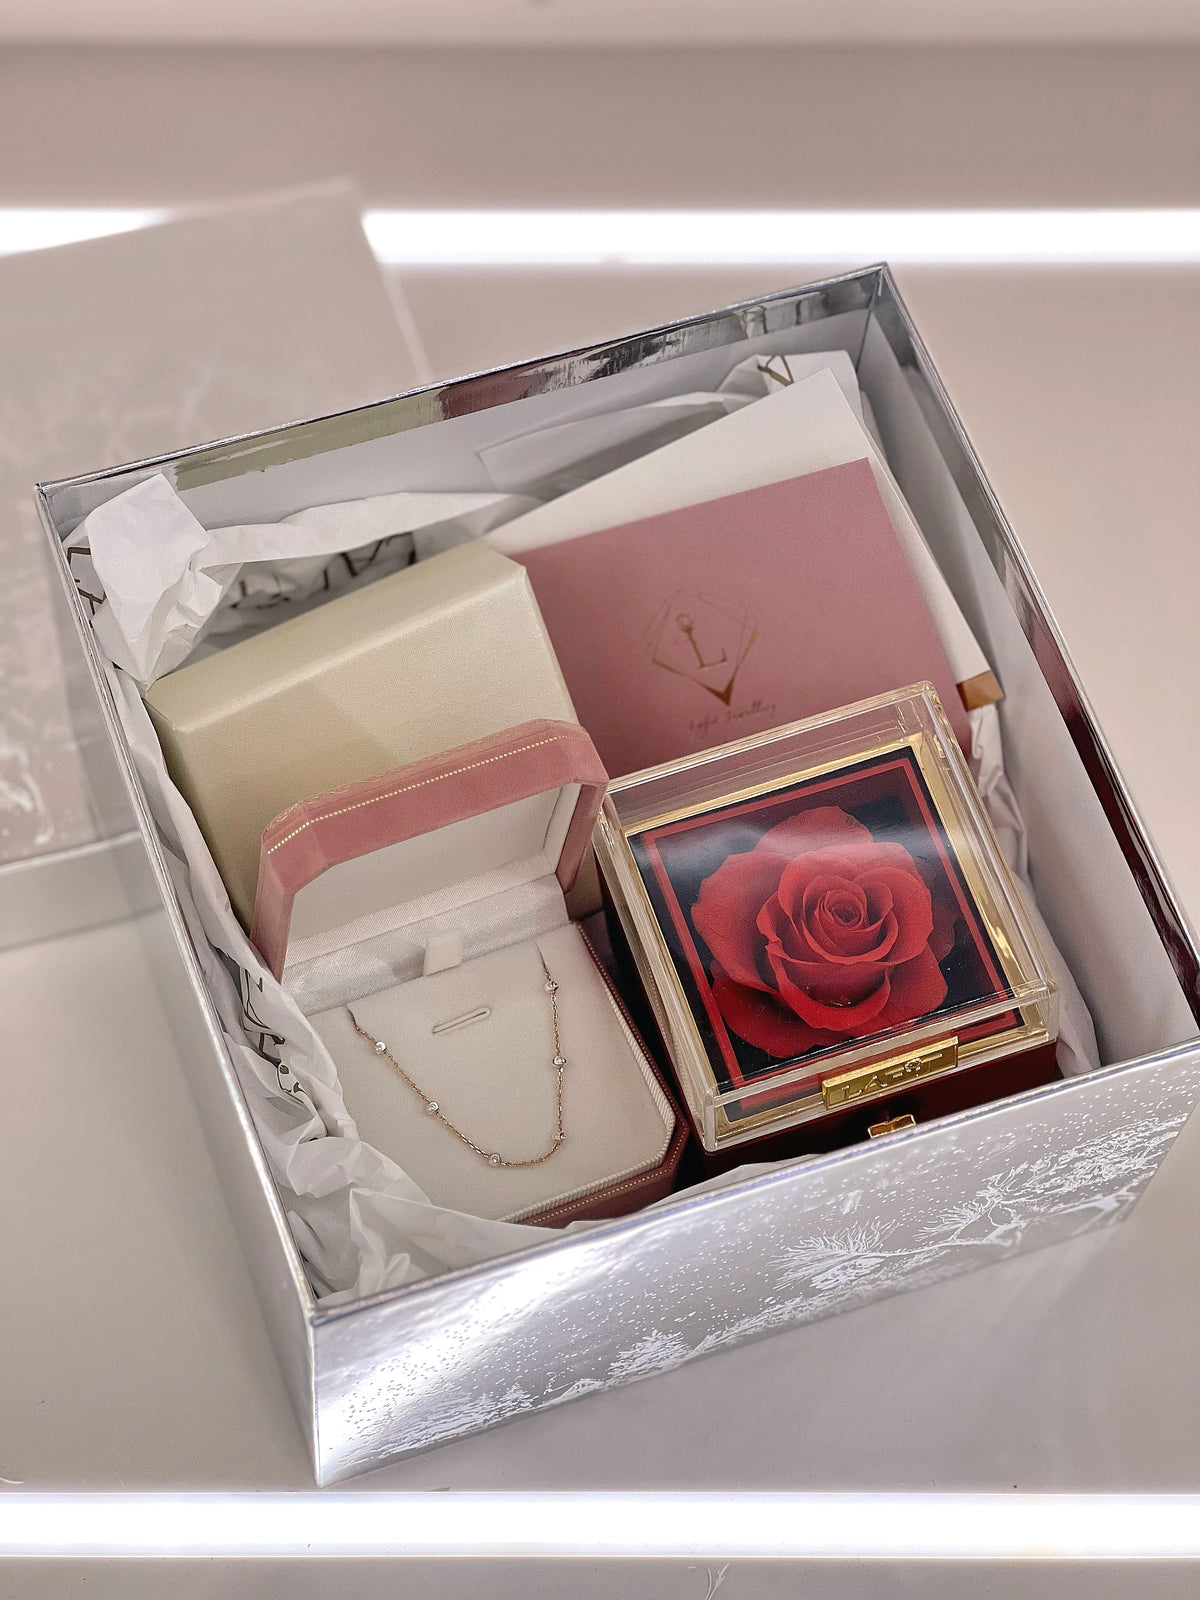 LAFIT· Shining Wish - 聖誕限定禮品套裝 意大利精緻珠寶